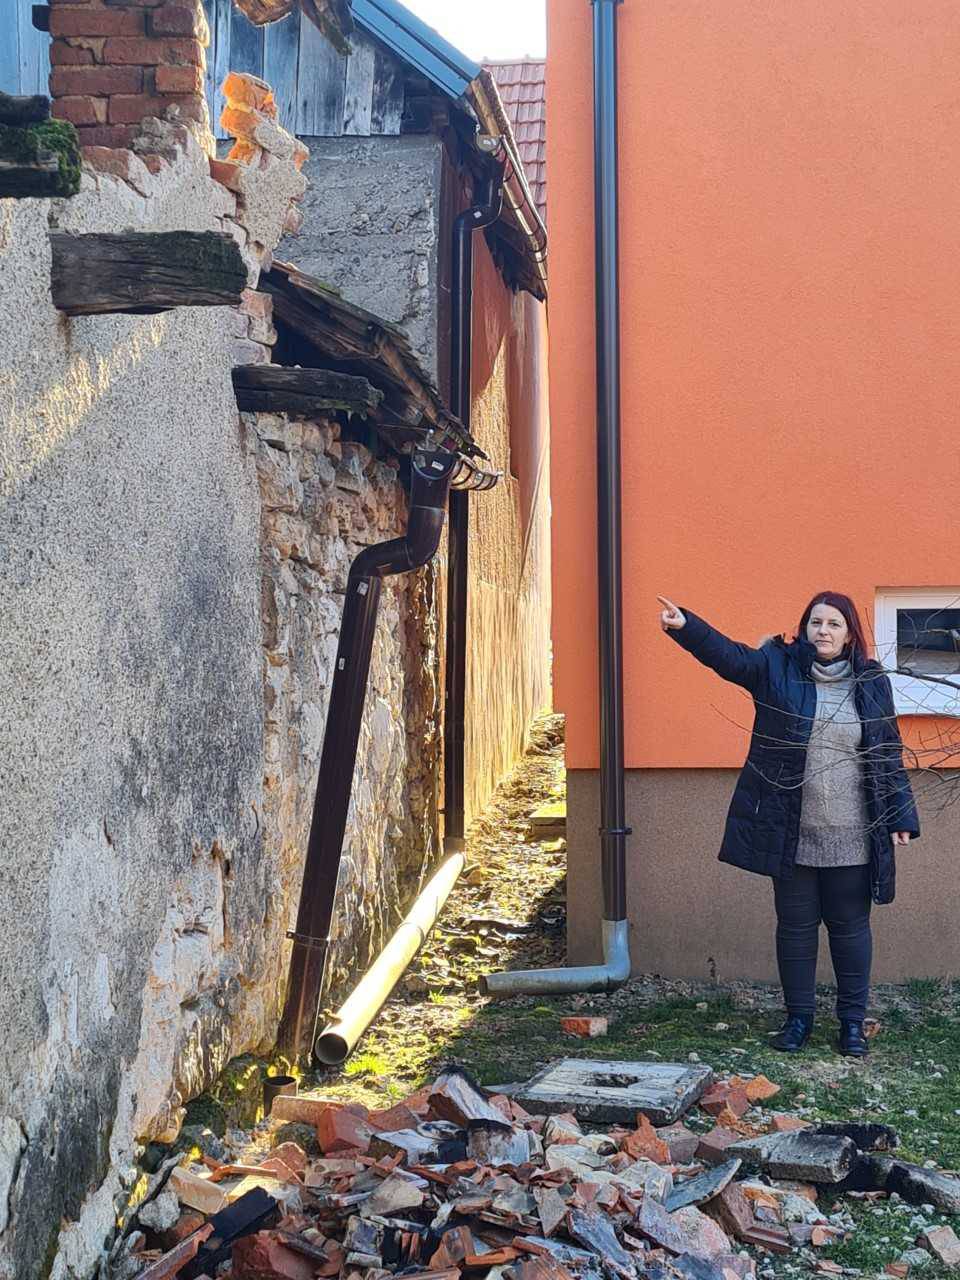 Prijeti im opasnost urušavanja susjedove kuće: Od potresa žive u strahu, ali pomoć ne stiže